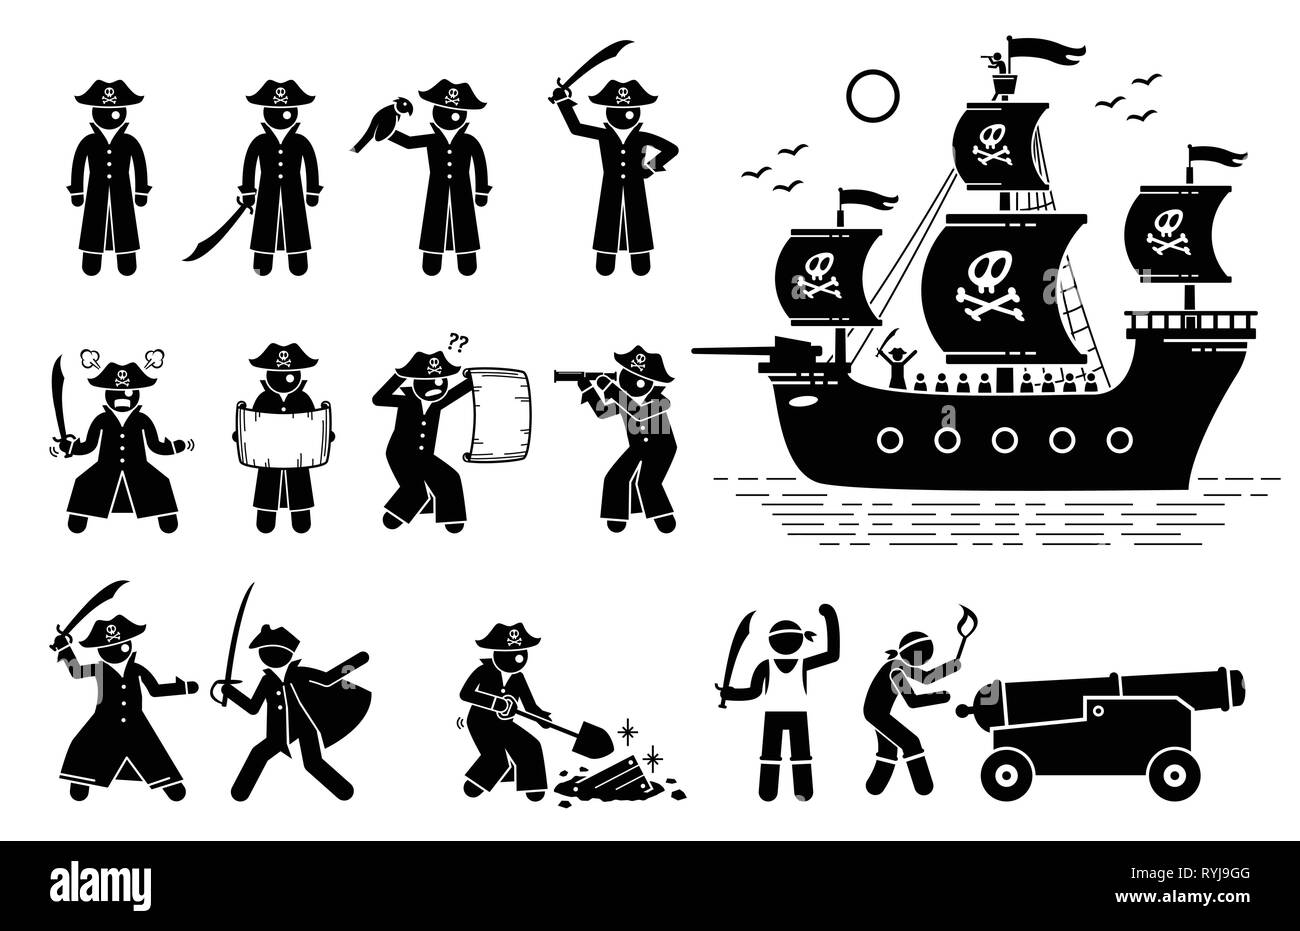 Les poses et les pirates du navire. Stick figure illustre pictogramme pirates à différentes actions telles que les combats à l'épée, la lecture de carte, à l'aide de Spyglass, trouver treasu Illustration de Vecteur